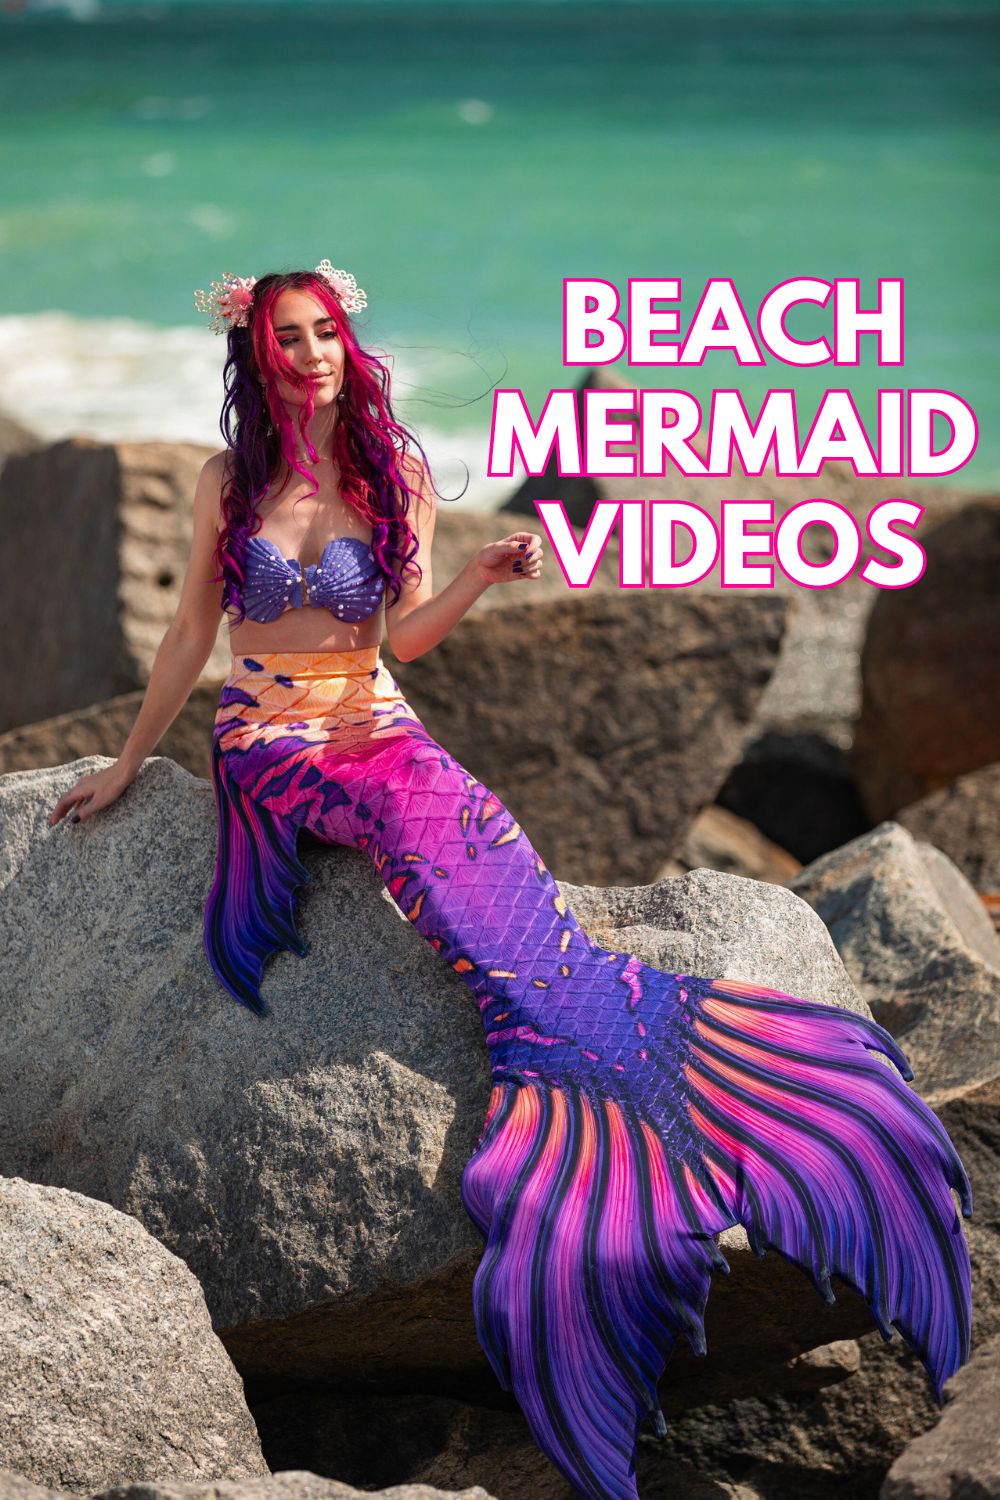 Beach mermaid videos